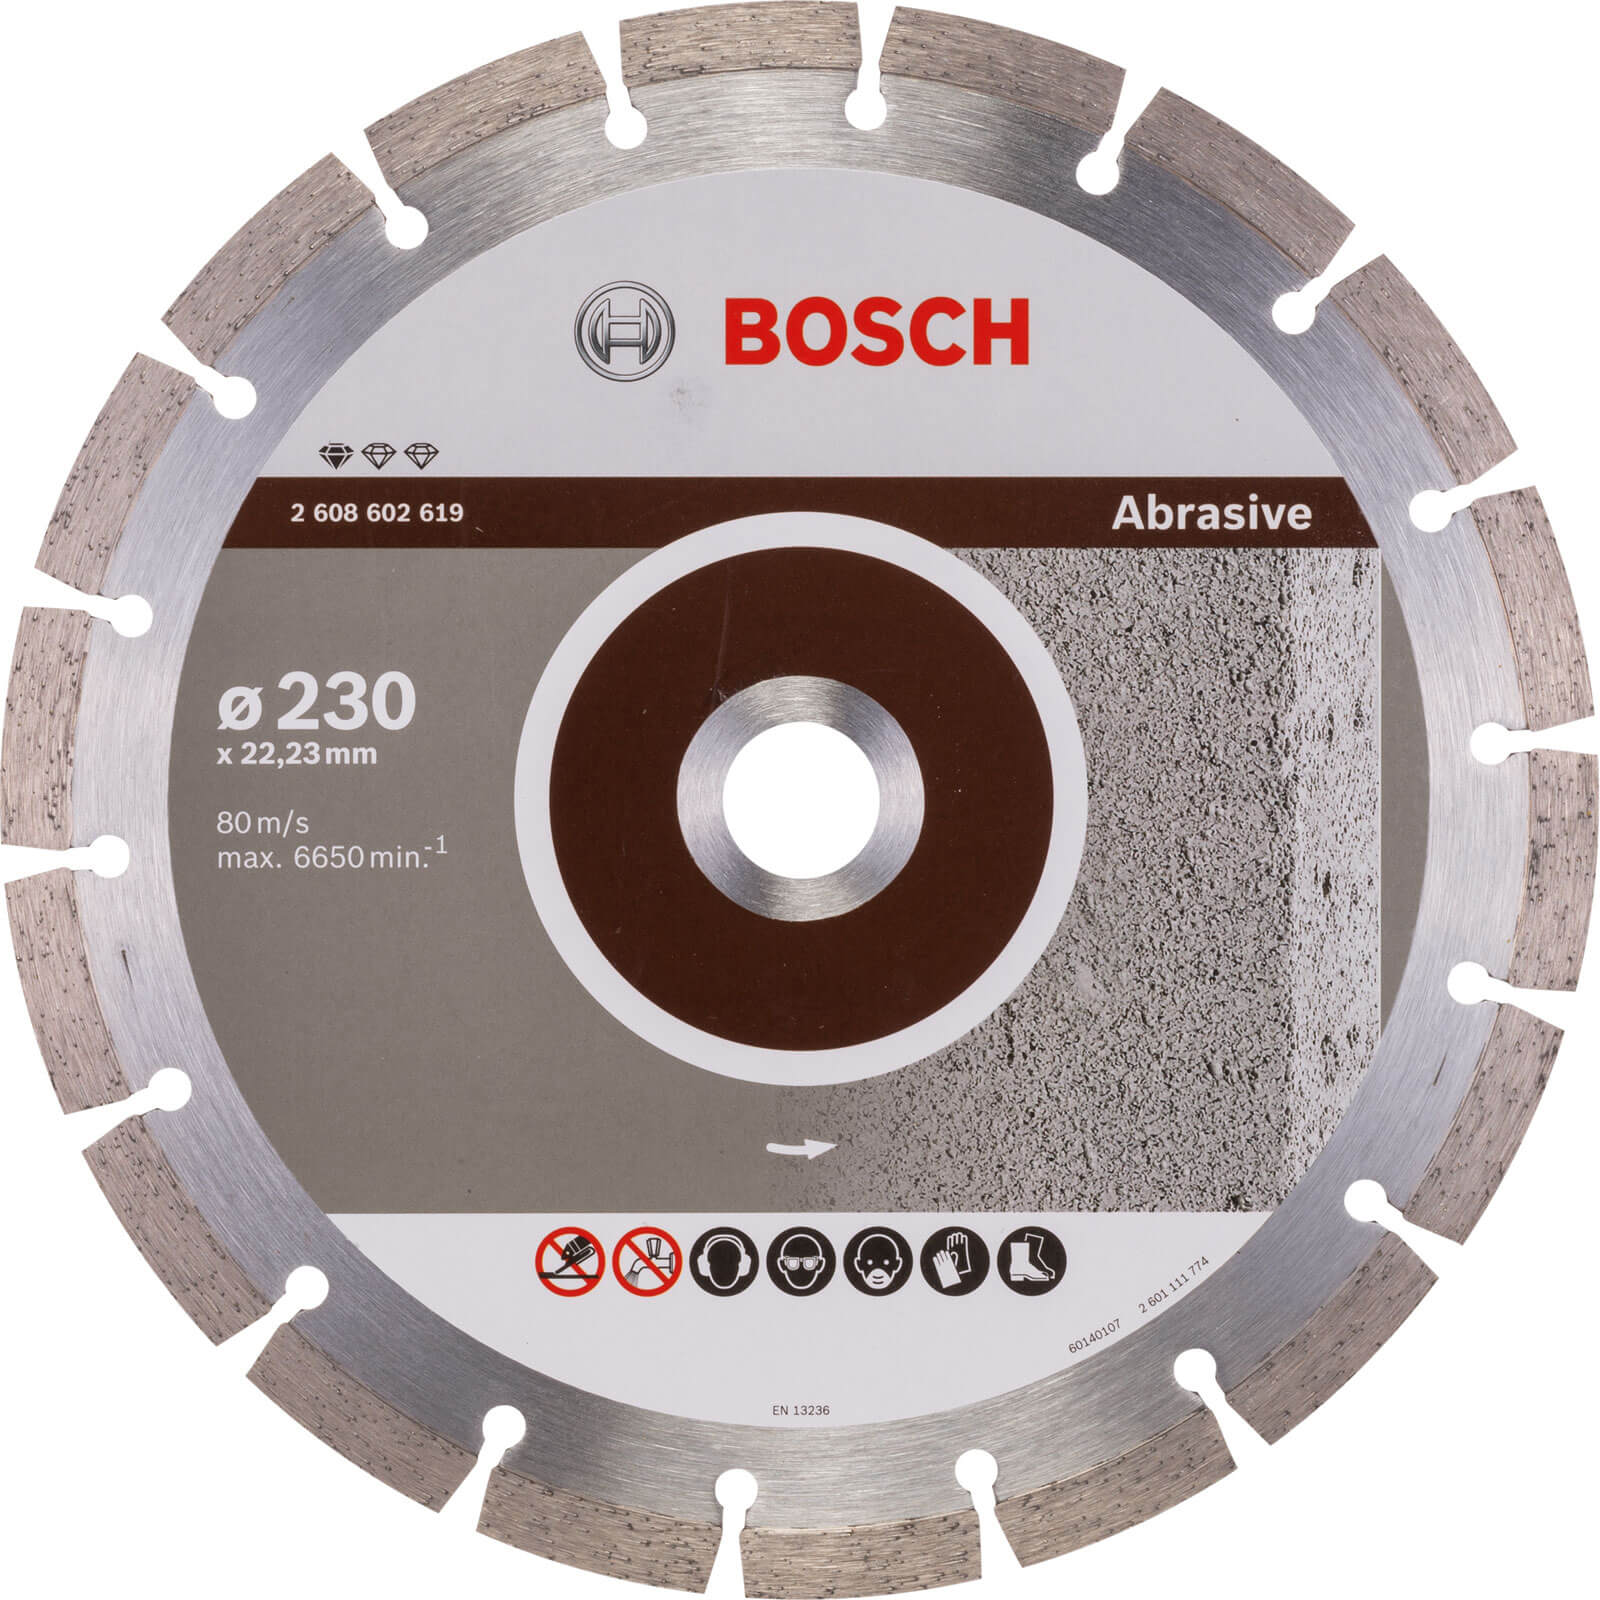 Photos - Cutting Disc Bosch Diamond Disc Standard for Abrasive Materials 230mm 2608602619 